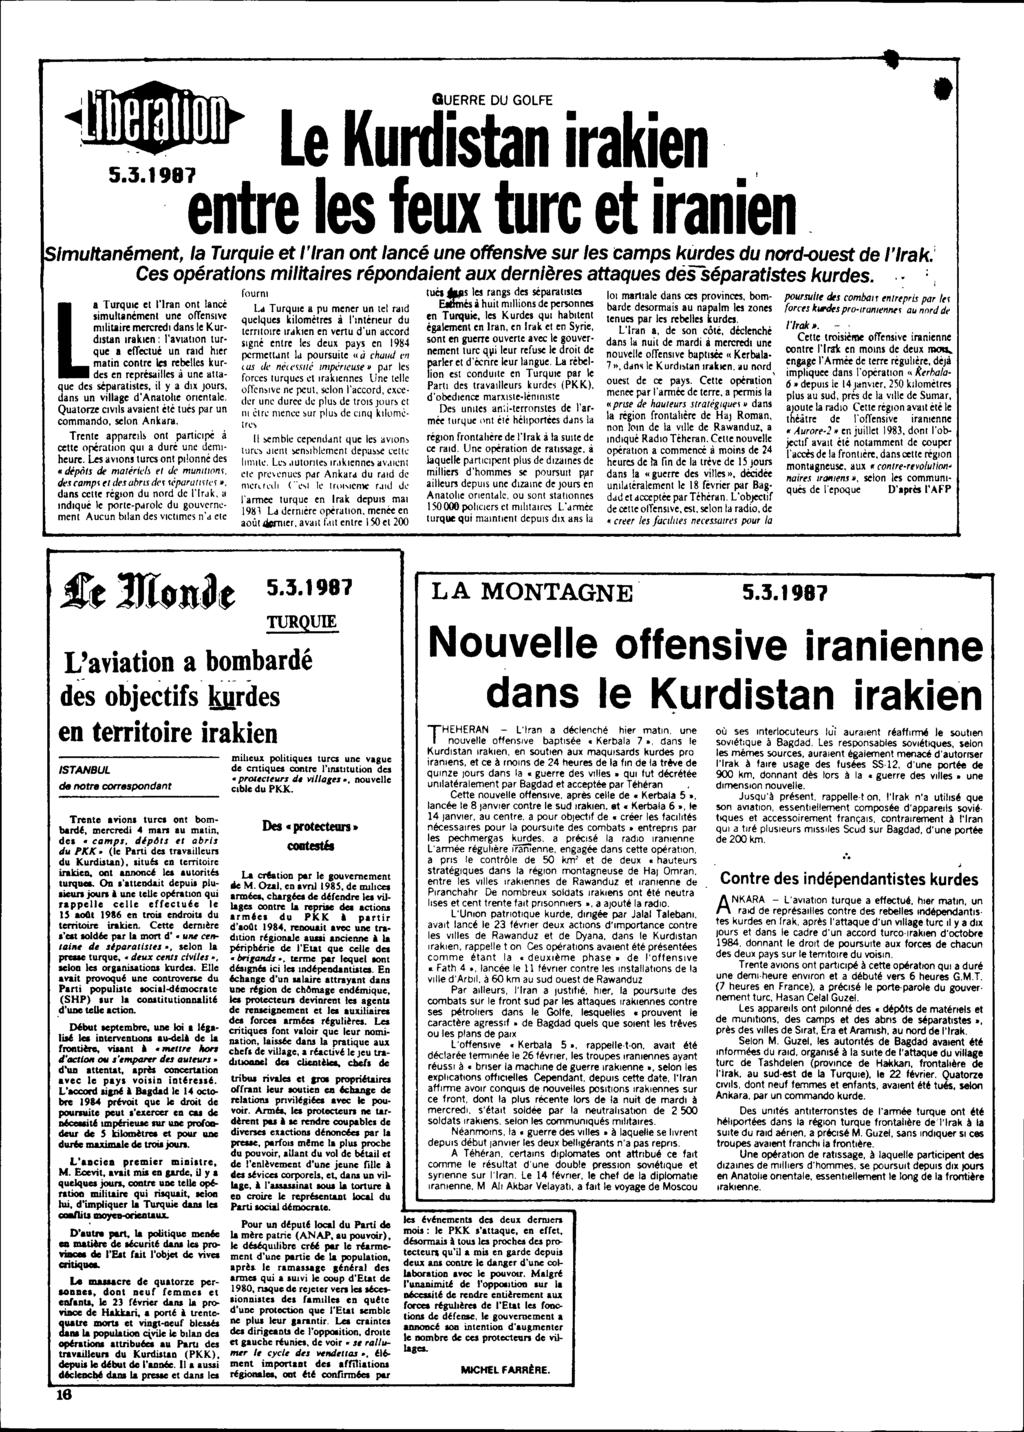 ~ I GUERRE DU GOLFE Le Kurdistan iraki.en.' 5.3.1981. entre les feux ture et Iramen Imultanément, la Turquie et l'iran ont lancé une offensive sur les camps kurdes du nord-ouest de l'irak.